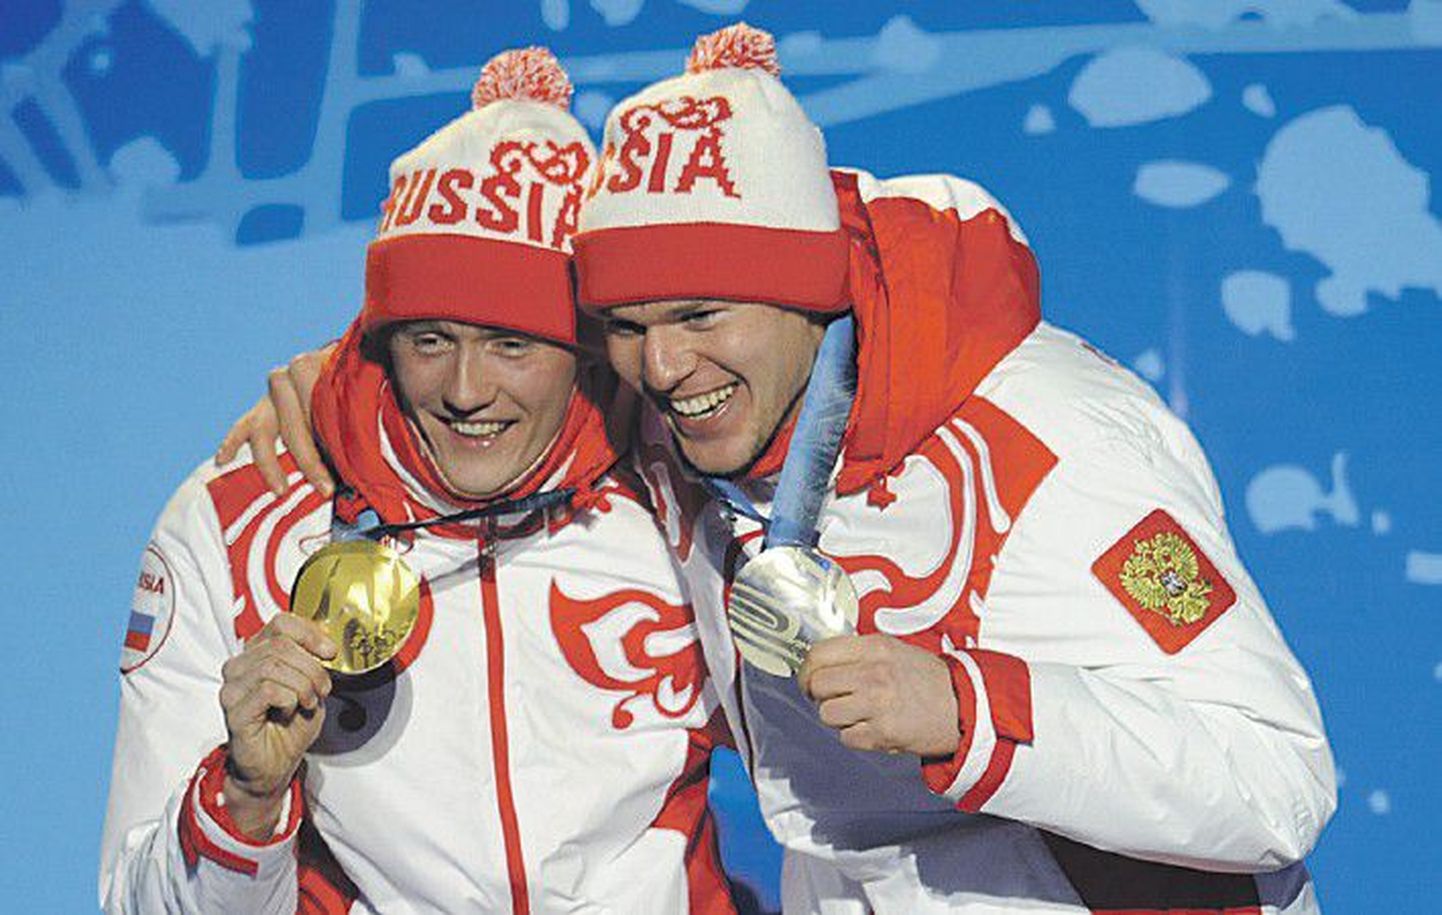 Никита Крюков и Александр Панжинский бурно радовались первым медалям — и своим, и российской сборной.